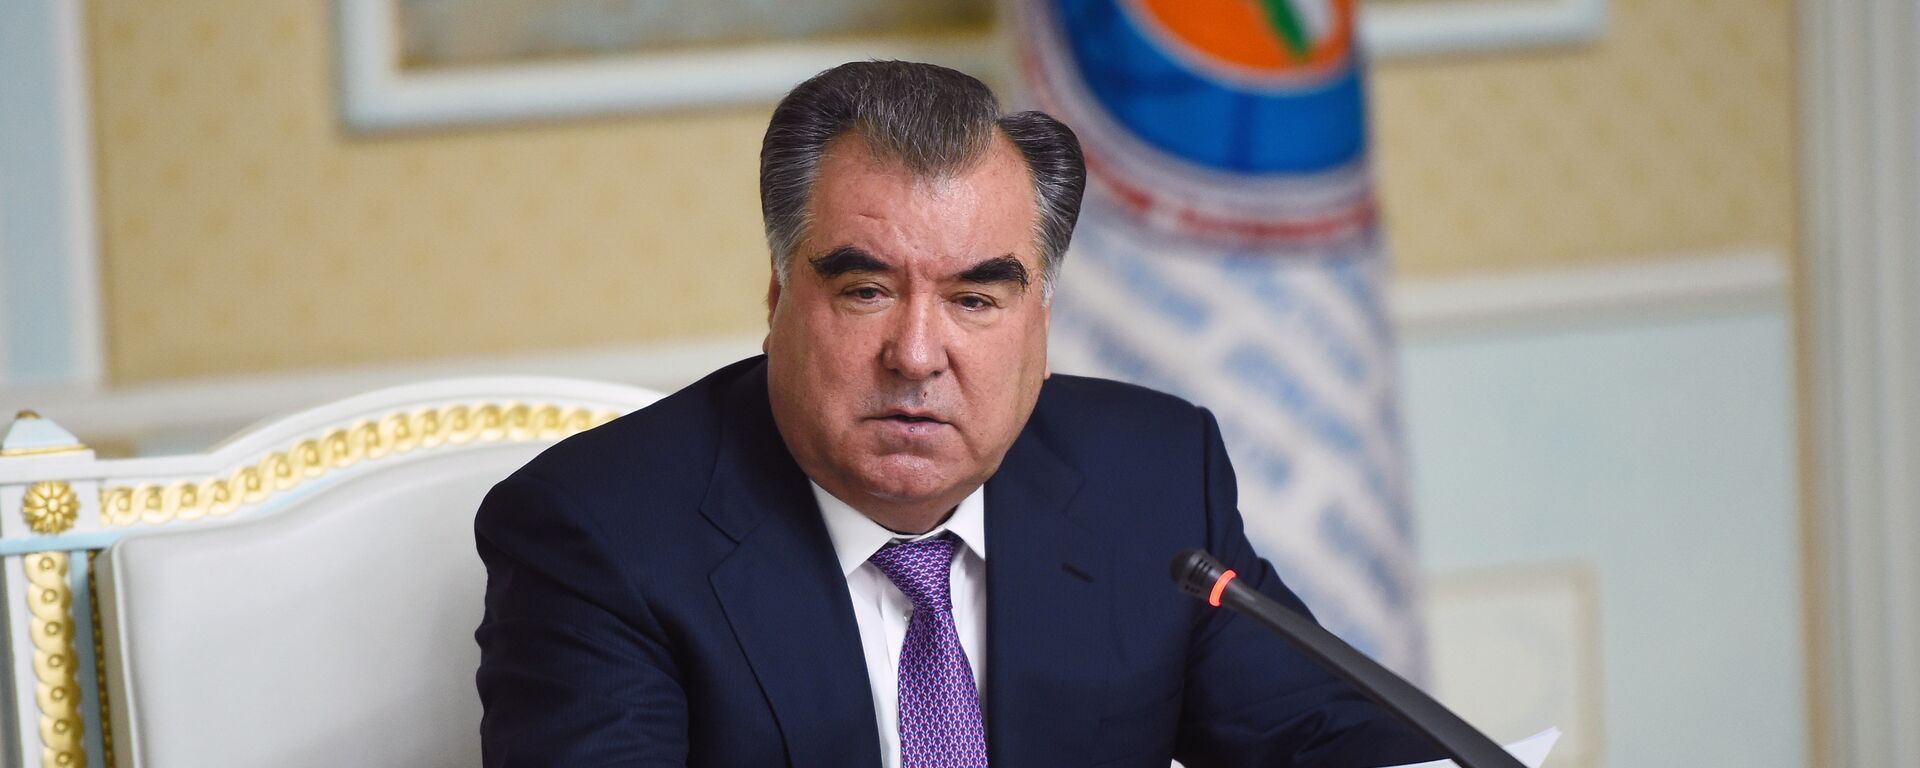 Президент Таджикистана Эмомали Рахмон - Sputnik Таджикистан, 1920, 25.02.2021